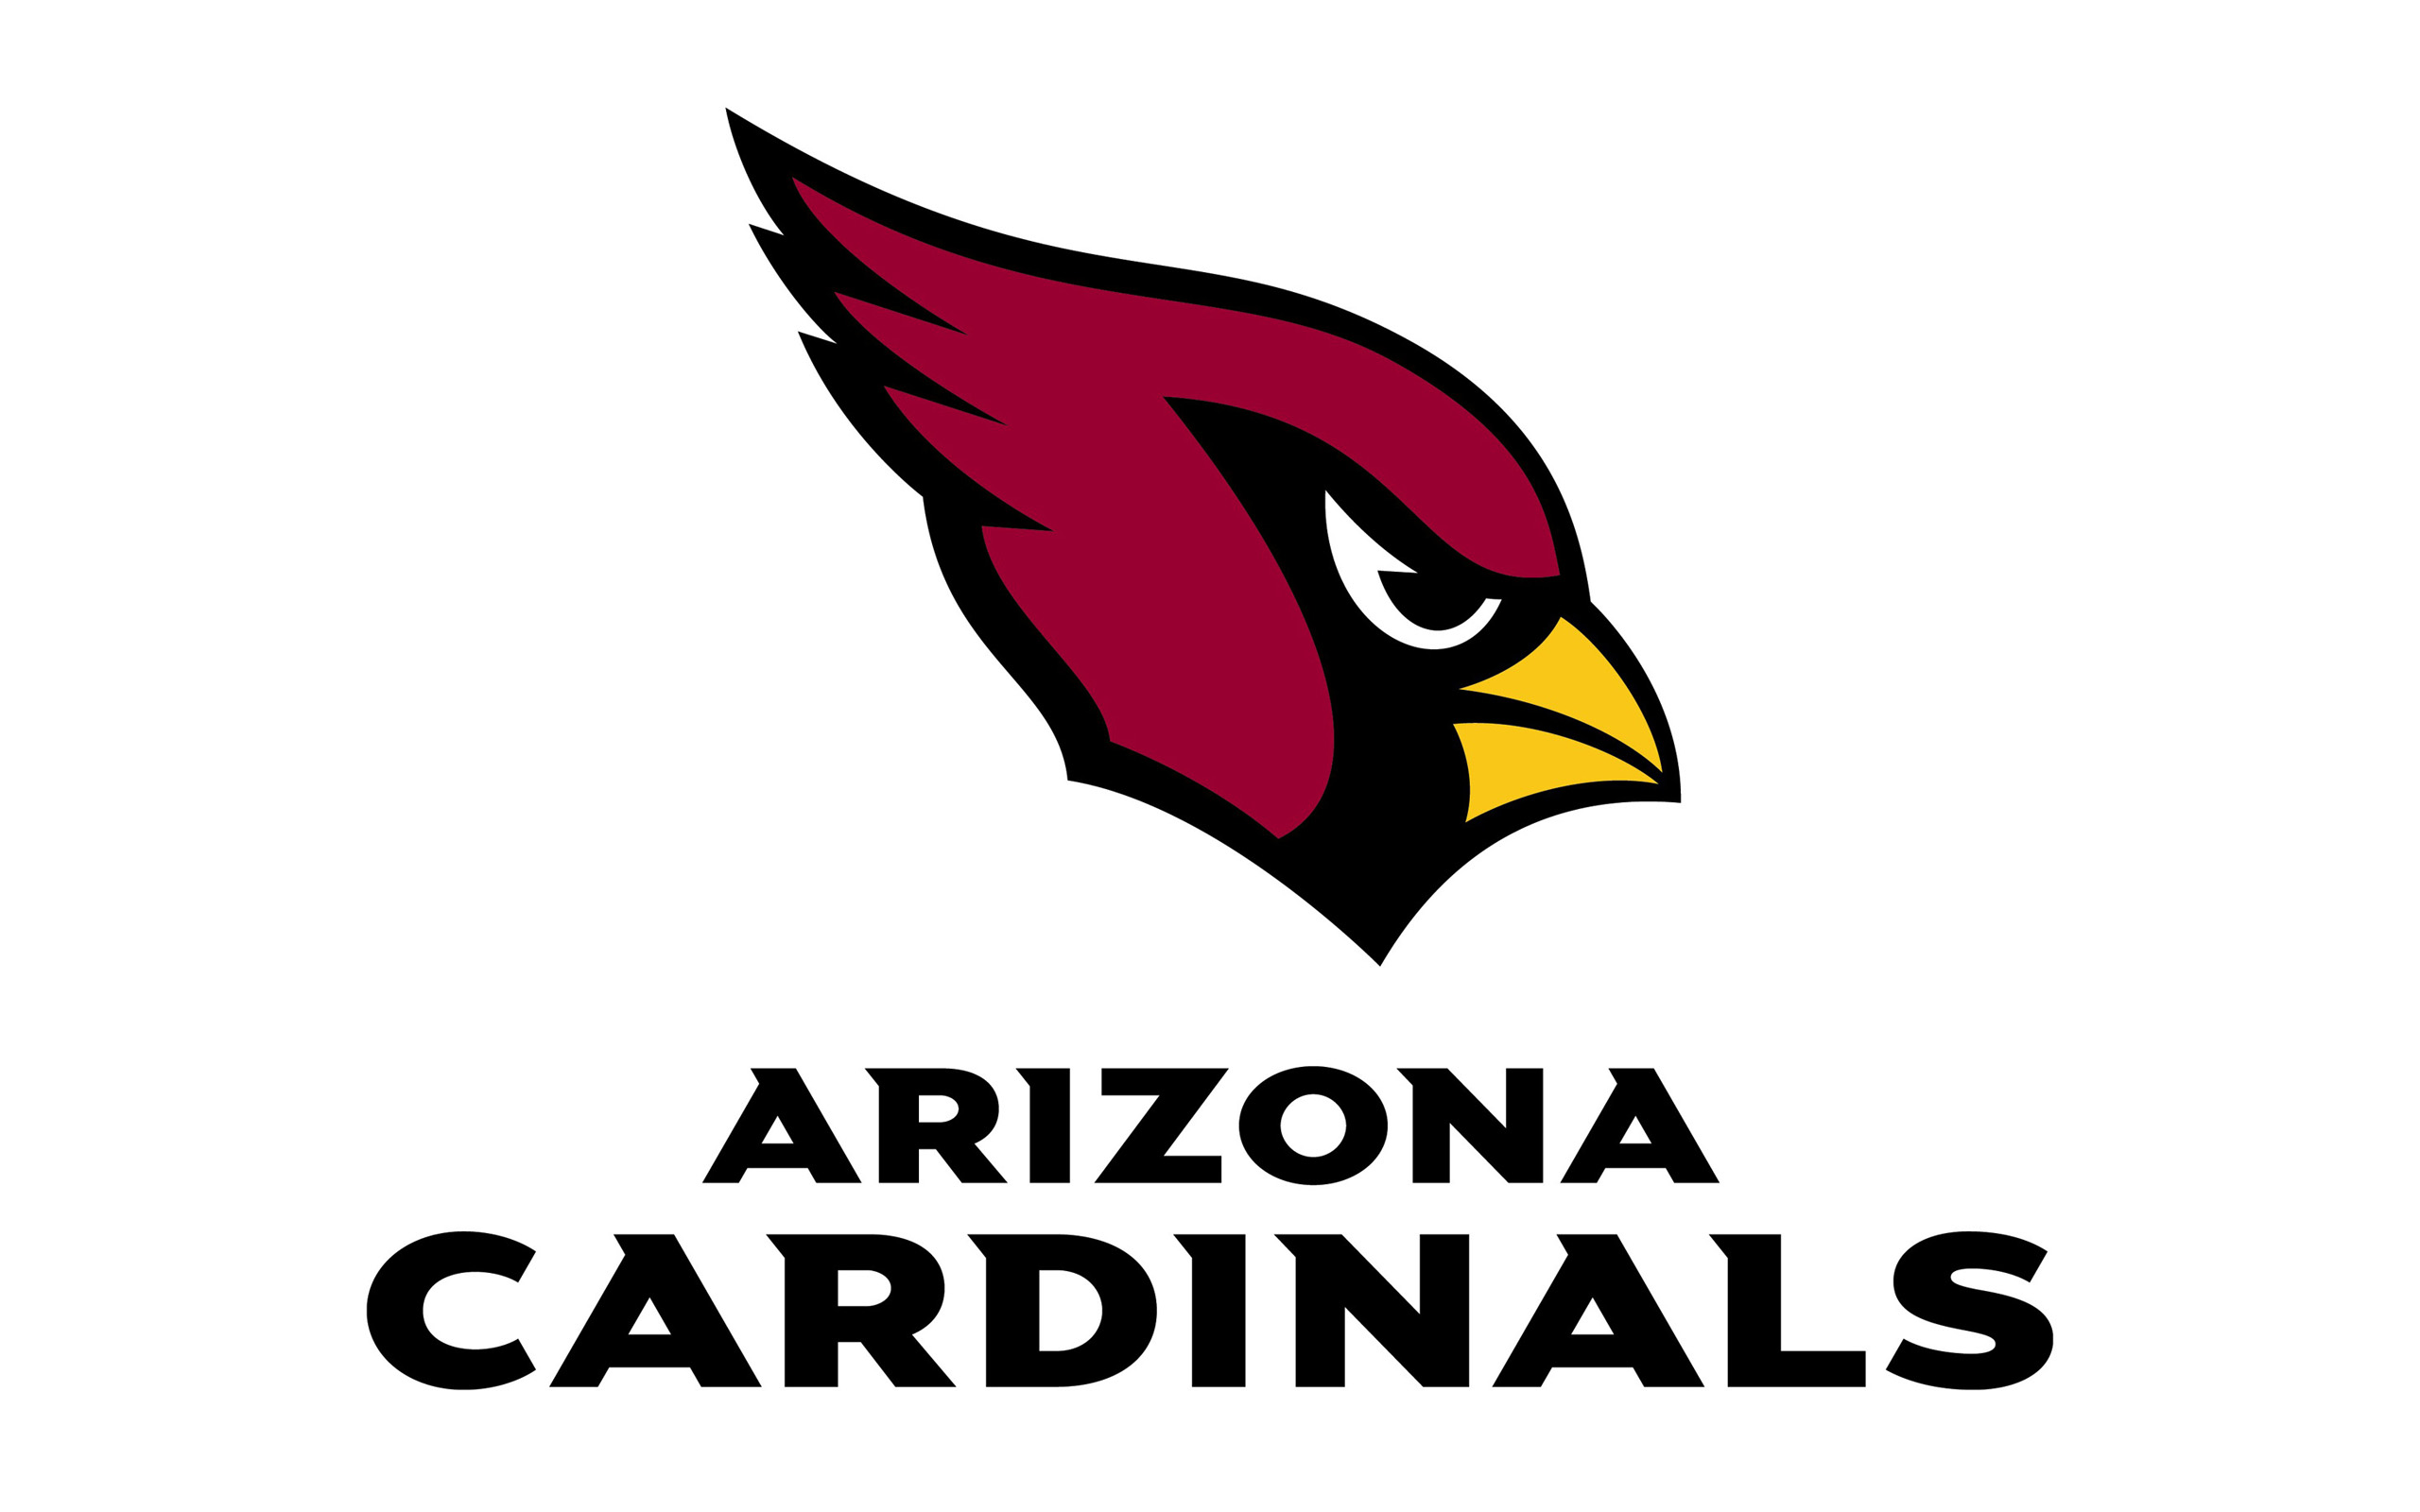 Cardinal logo clipart